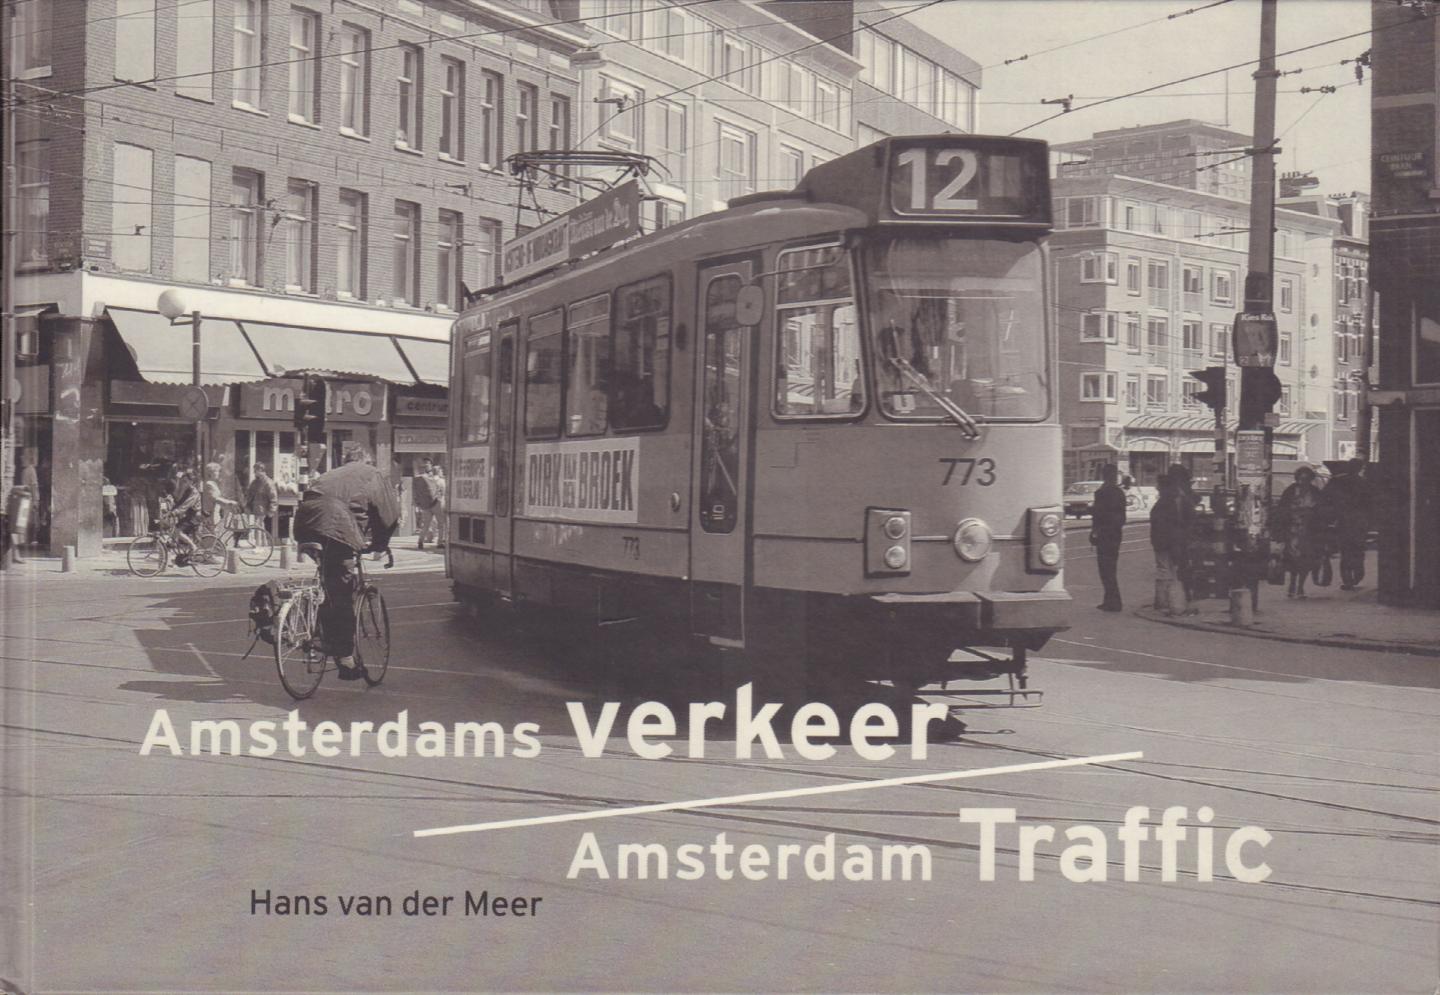 Meer, Hans van der - Amsterdams Verkeer / Amsterdam Traffic (fotoboekje), 71 pag. kleine hardcover, gave staat